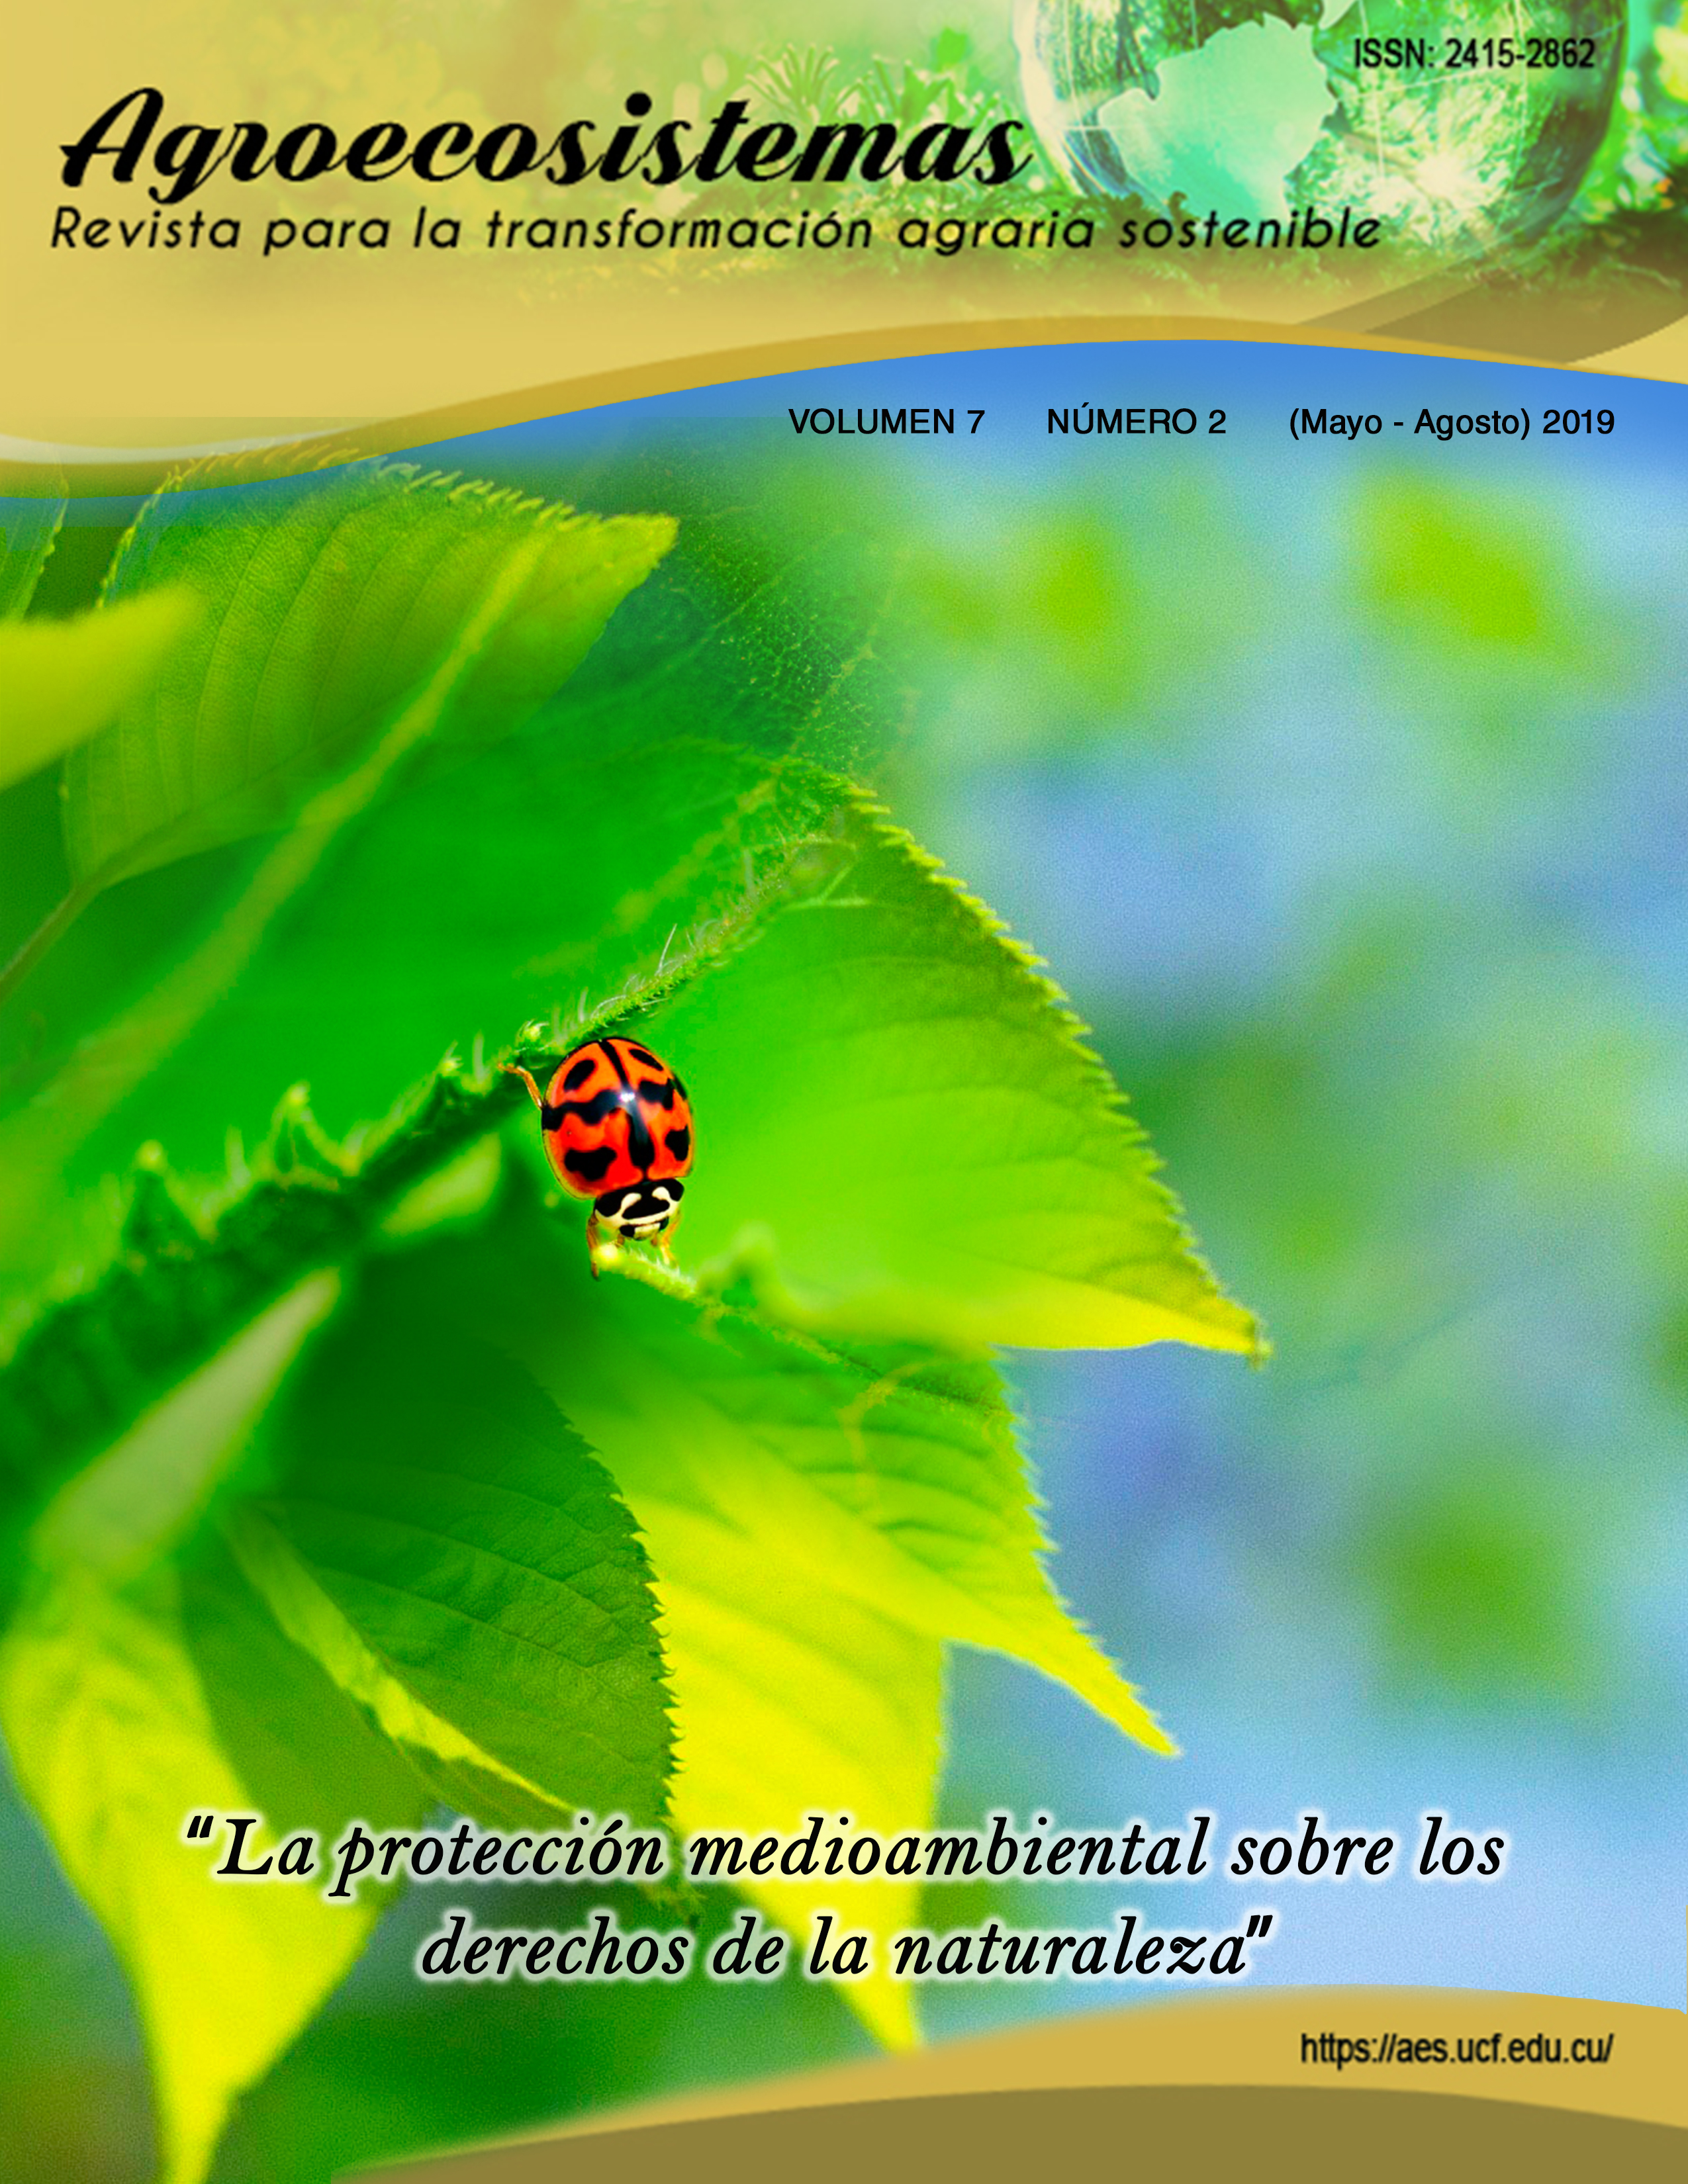 					View Vol. 7 No. 2 (2019): La protección medioambiental sobre los derechos de la naturaleza (Mayo-Agosto)
				